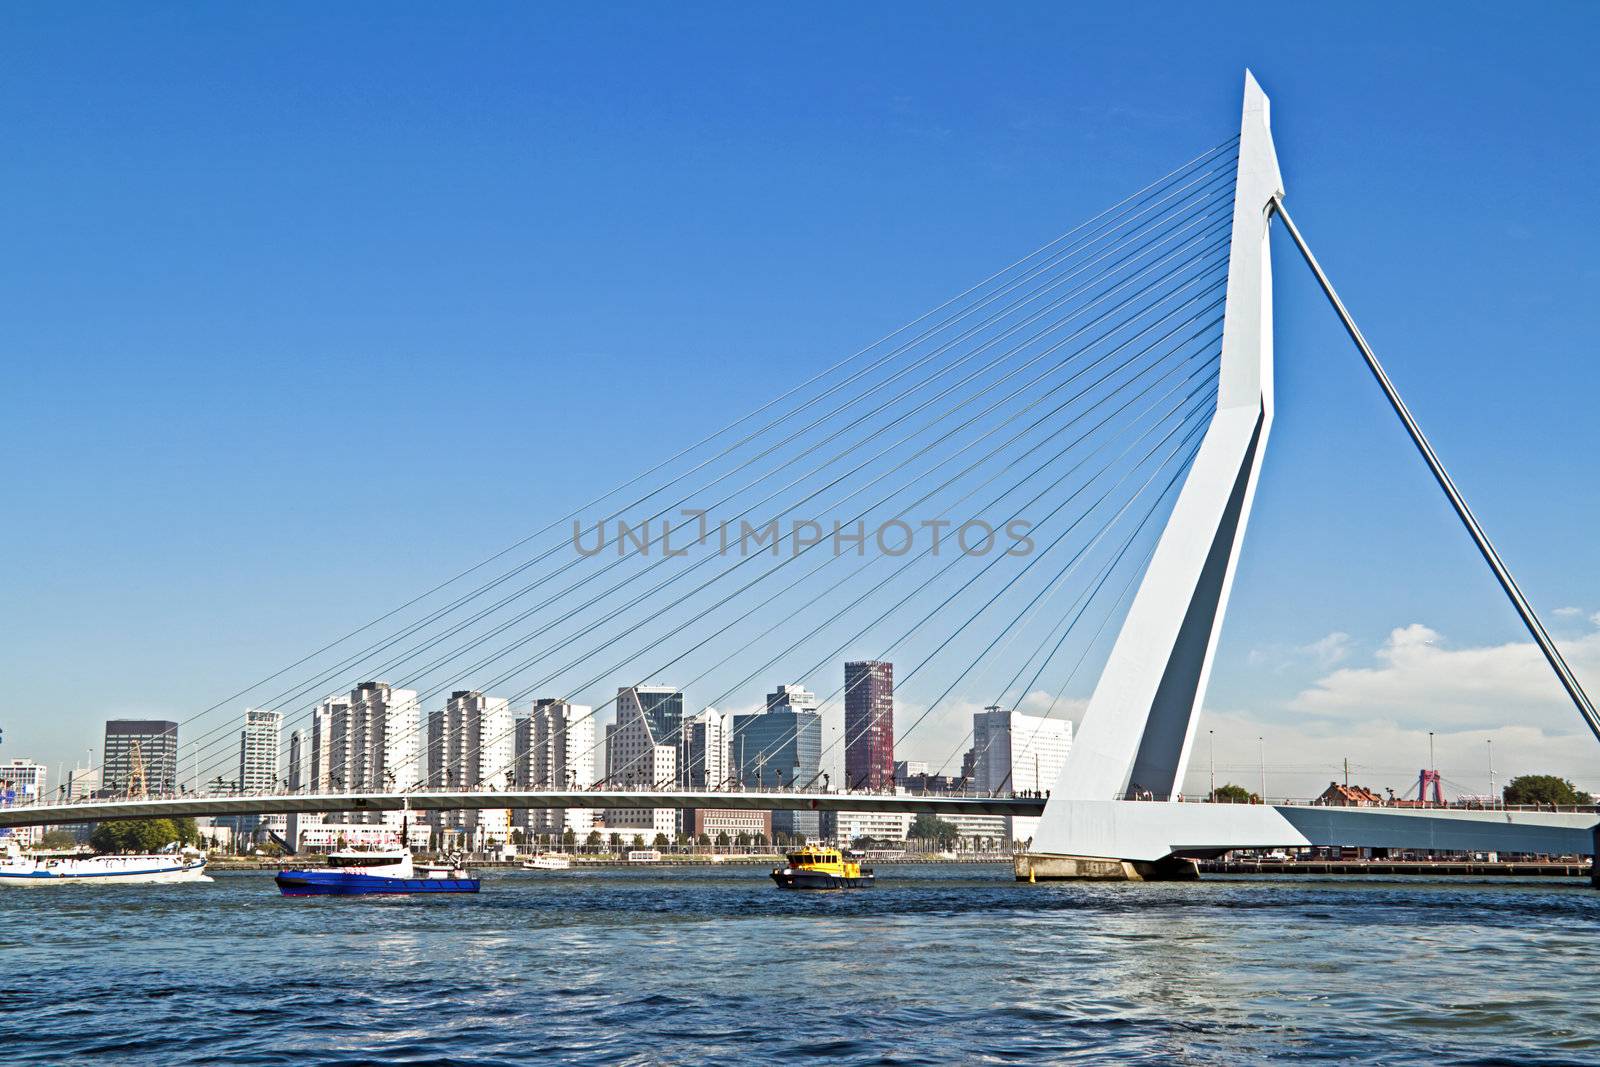 Erasmus bridge in Rotterdam harbor the Netherlands by devy